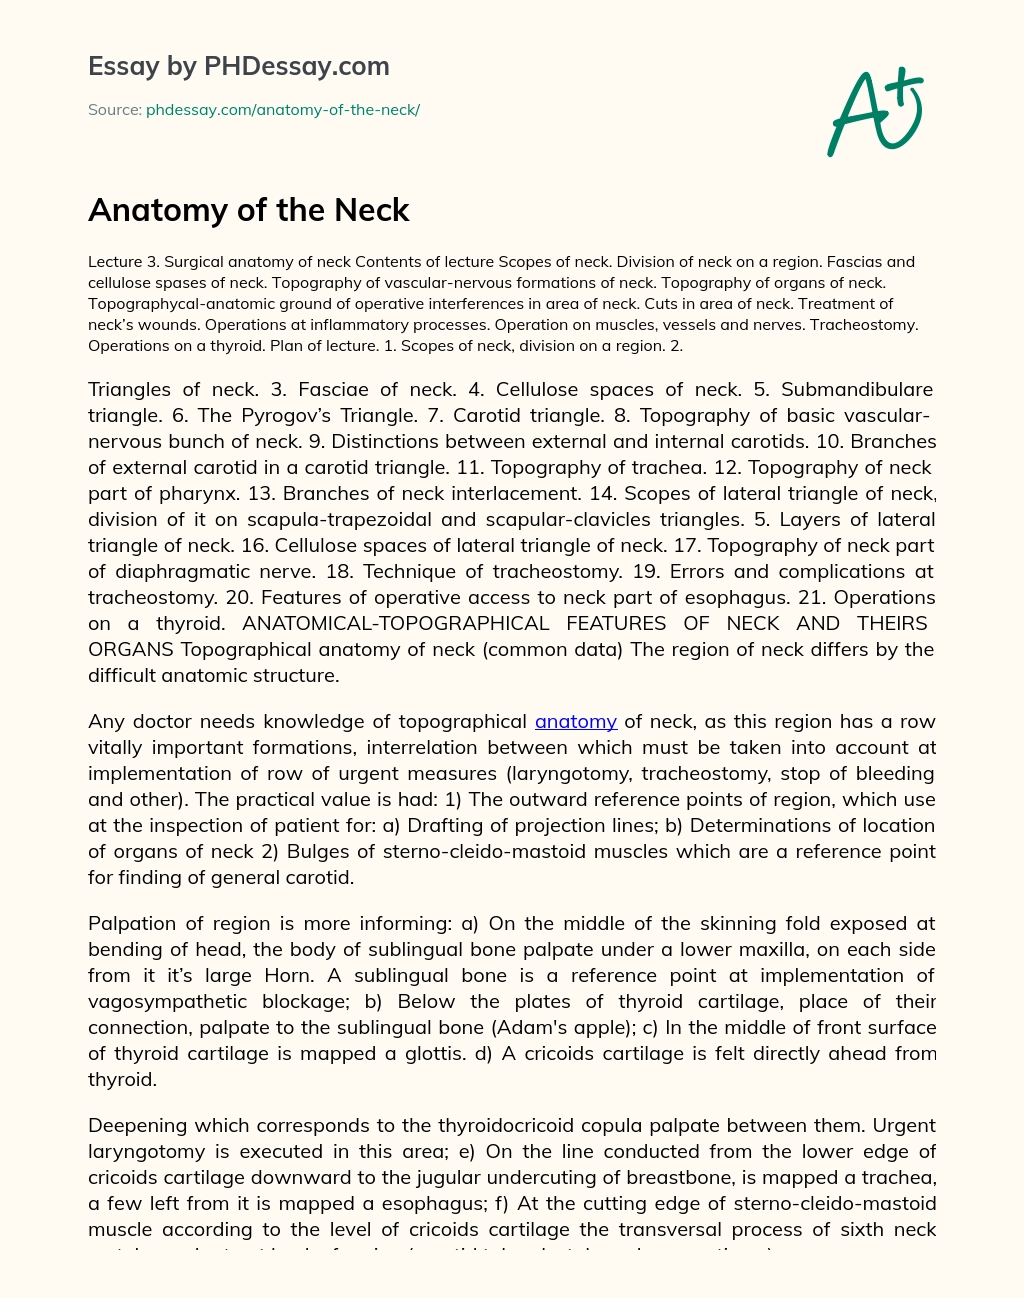 Anatomy of the Neck essay